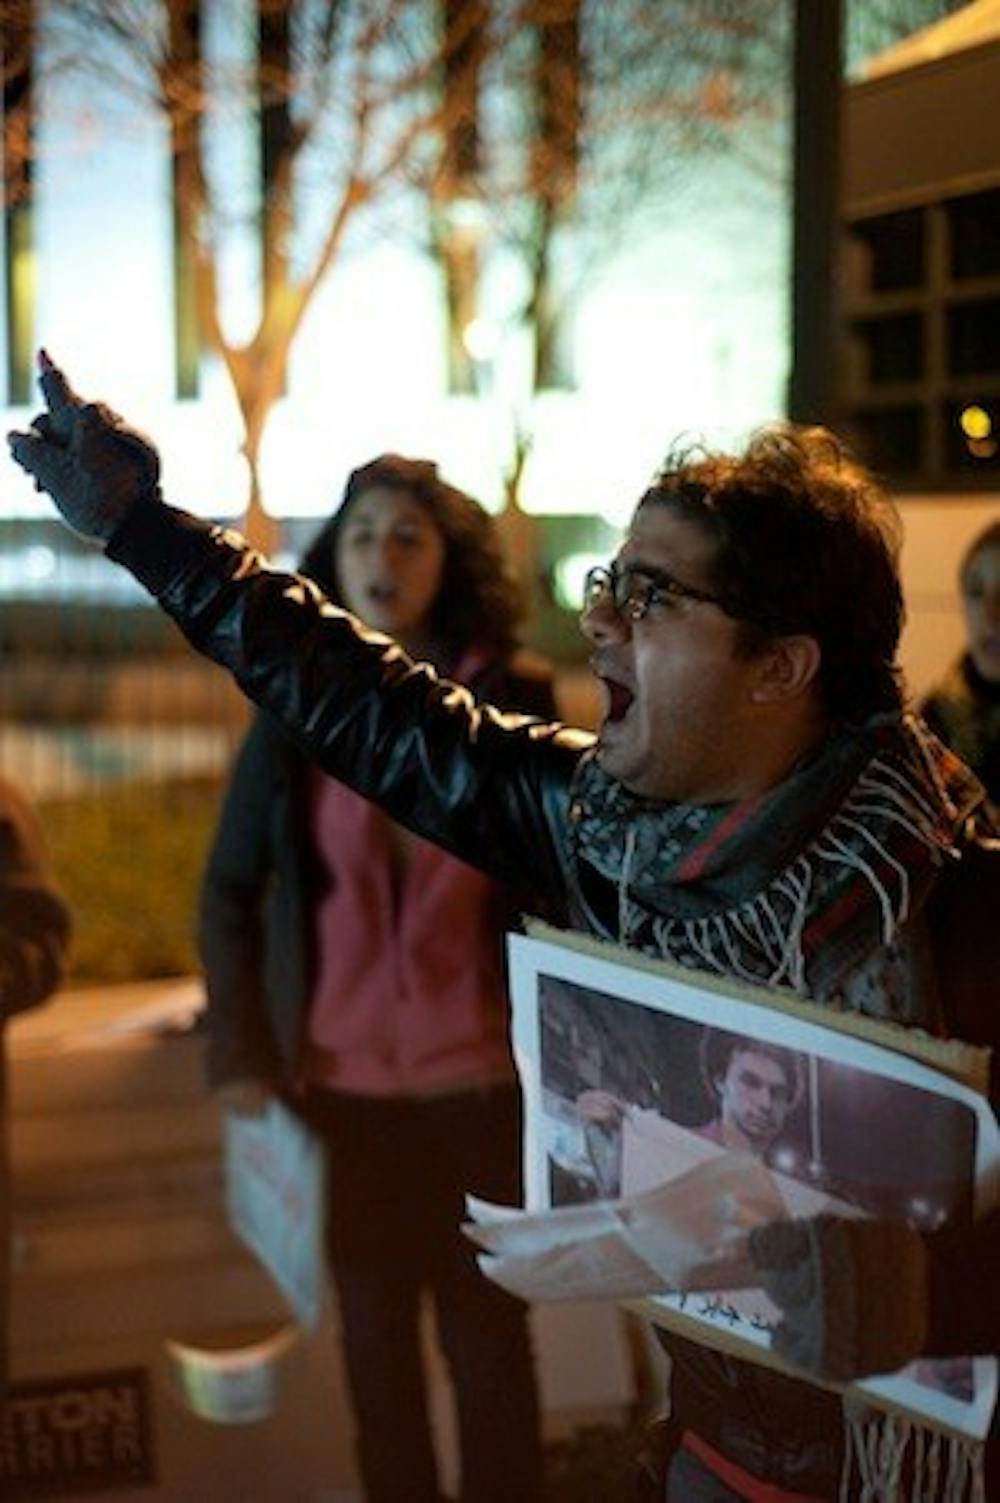 Egyptian-born Salam Tarek protests outside Egypt\'s embassy in Van Ness on Nov. 28 against Egyptian President Mohammed Morsi.